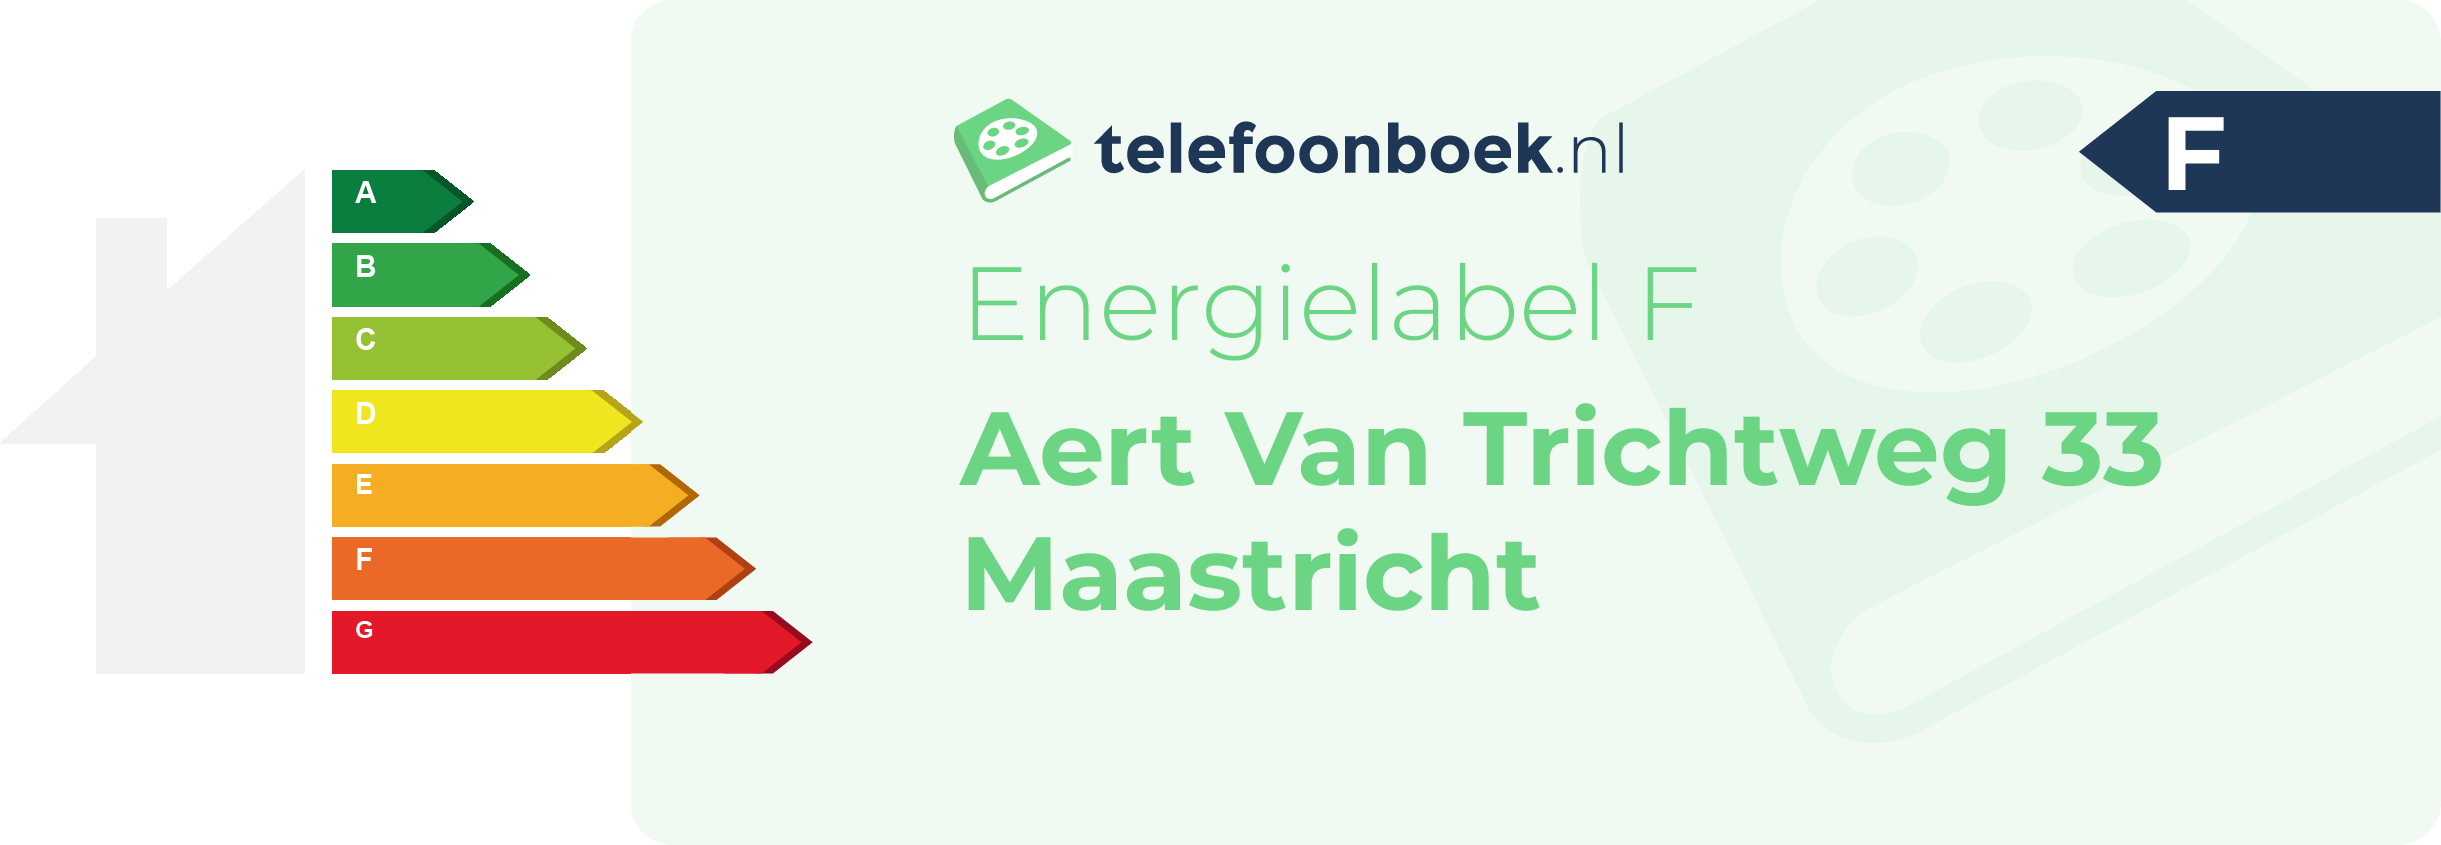 Energielabel Aert Van Trichtweg 33 Maastricht